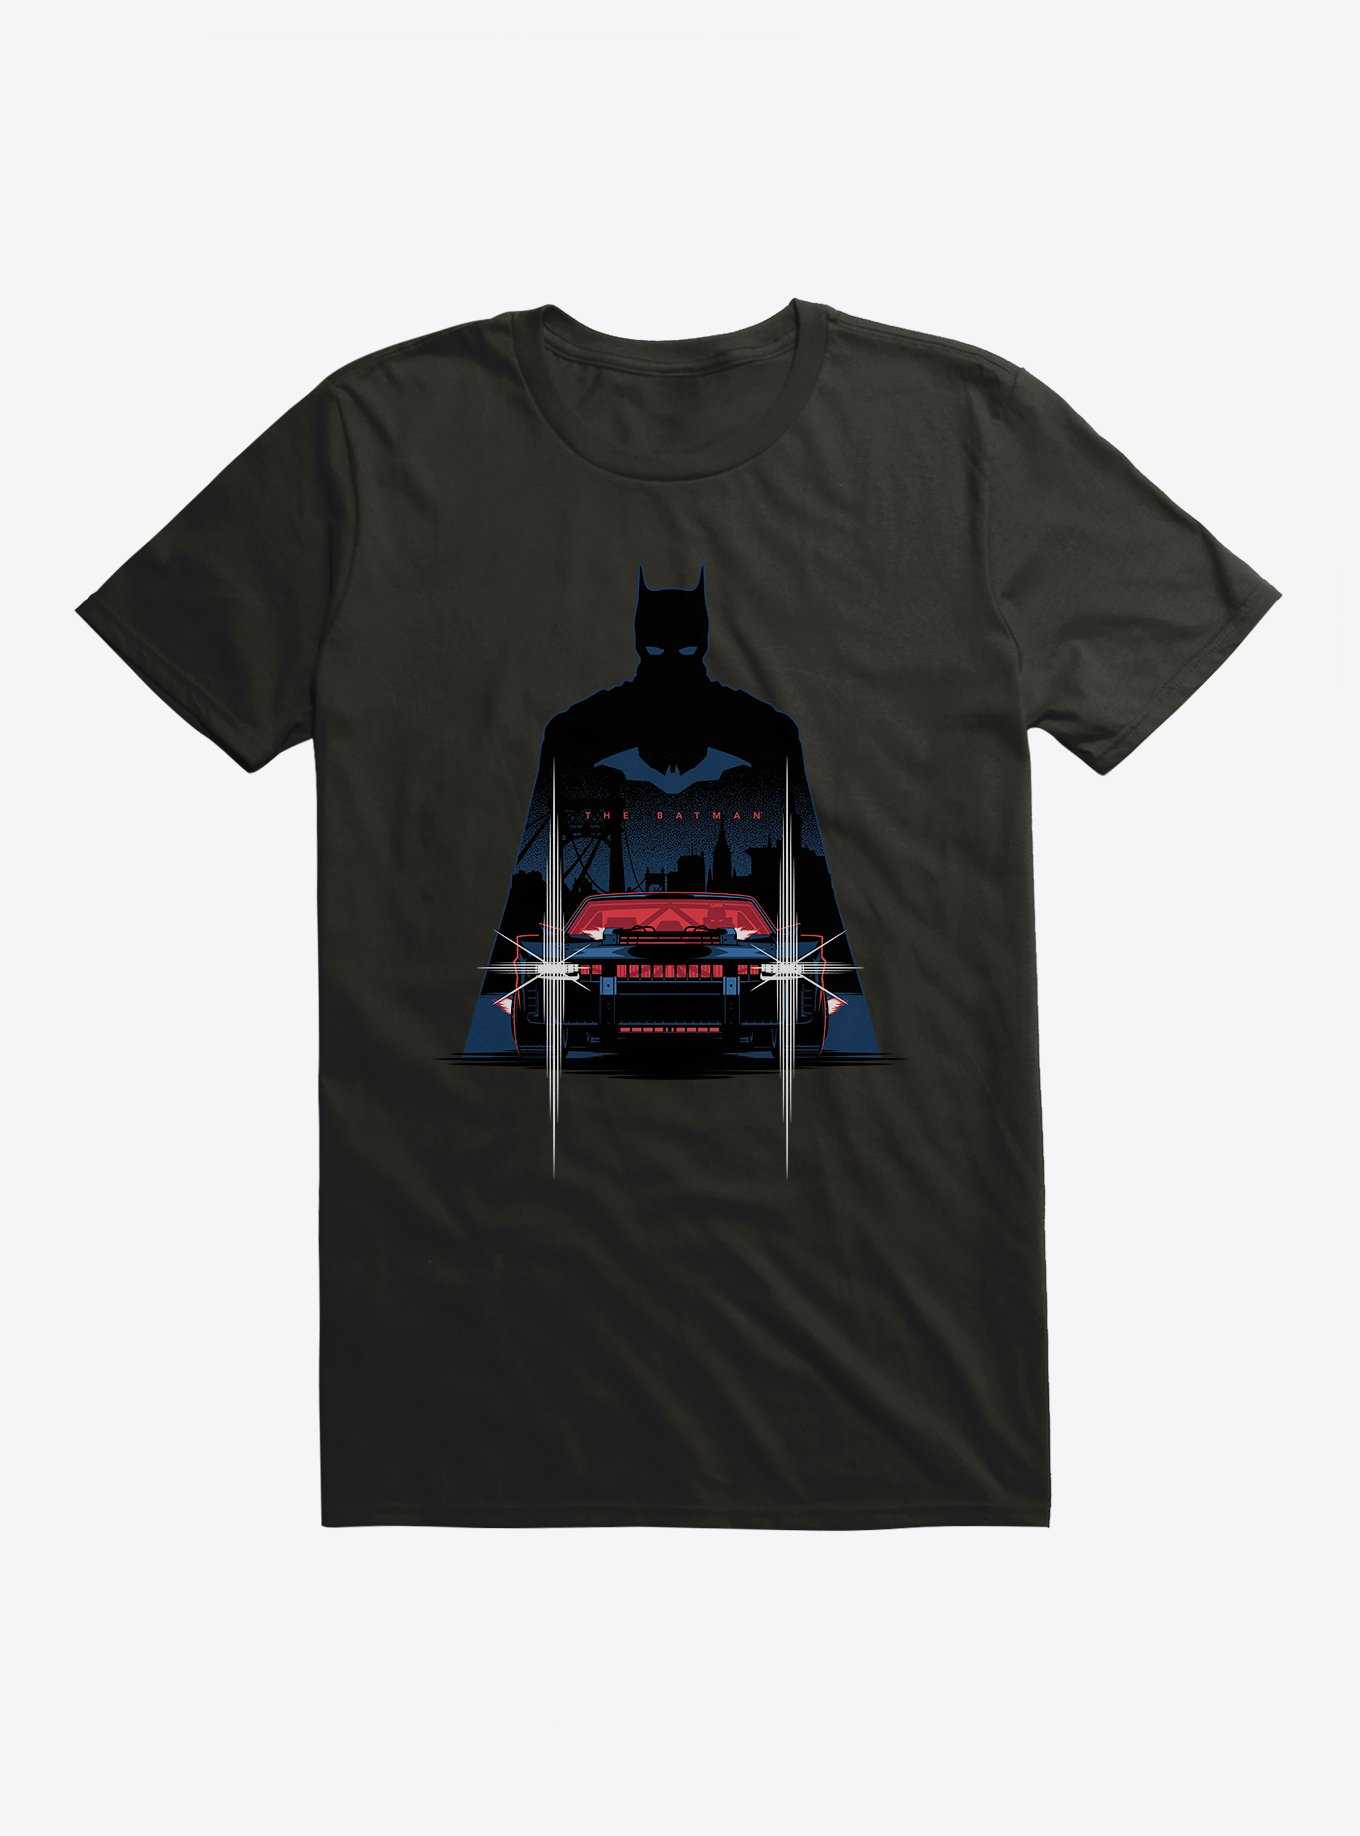 DC Comics The Batman Batmobile T-Shirt, , hi-res